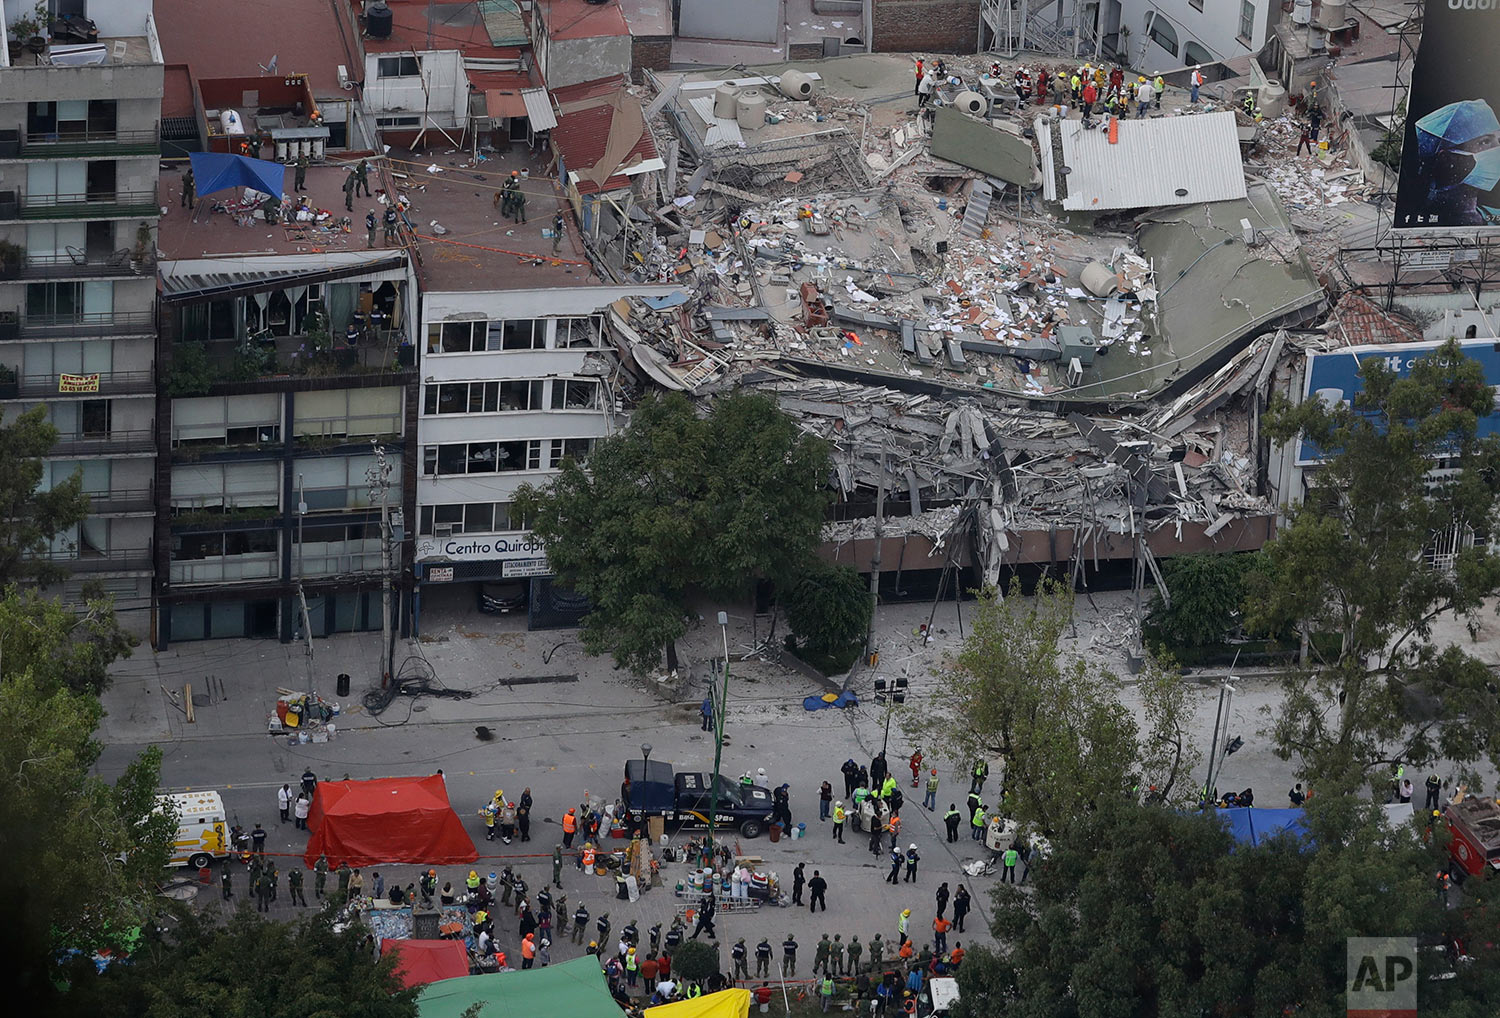 Mexico Earthquake